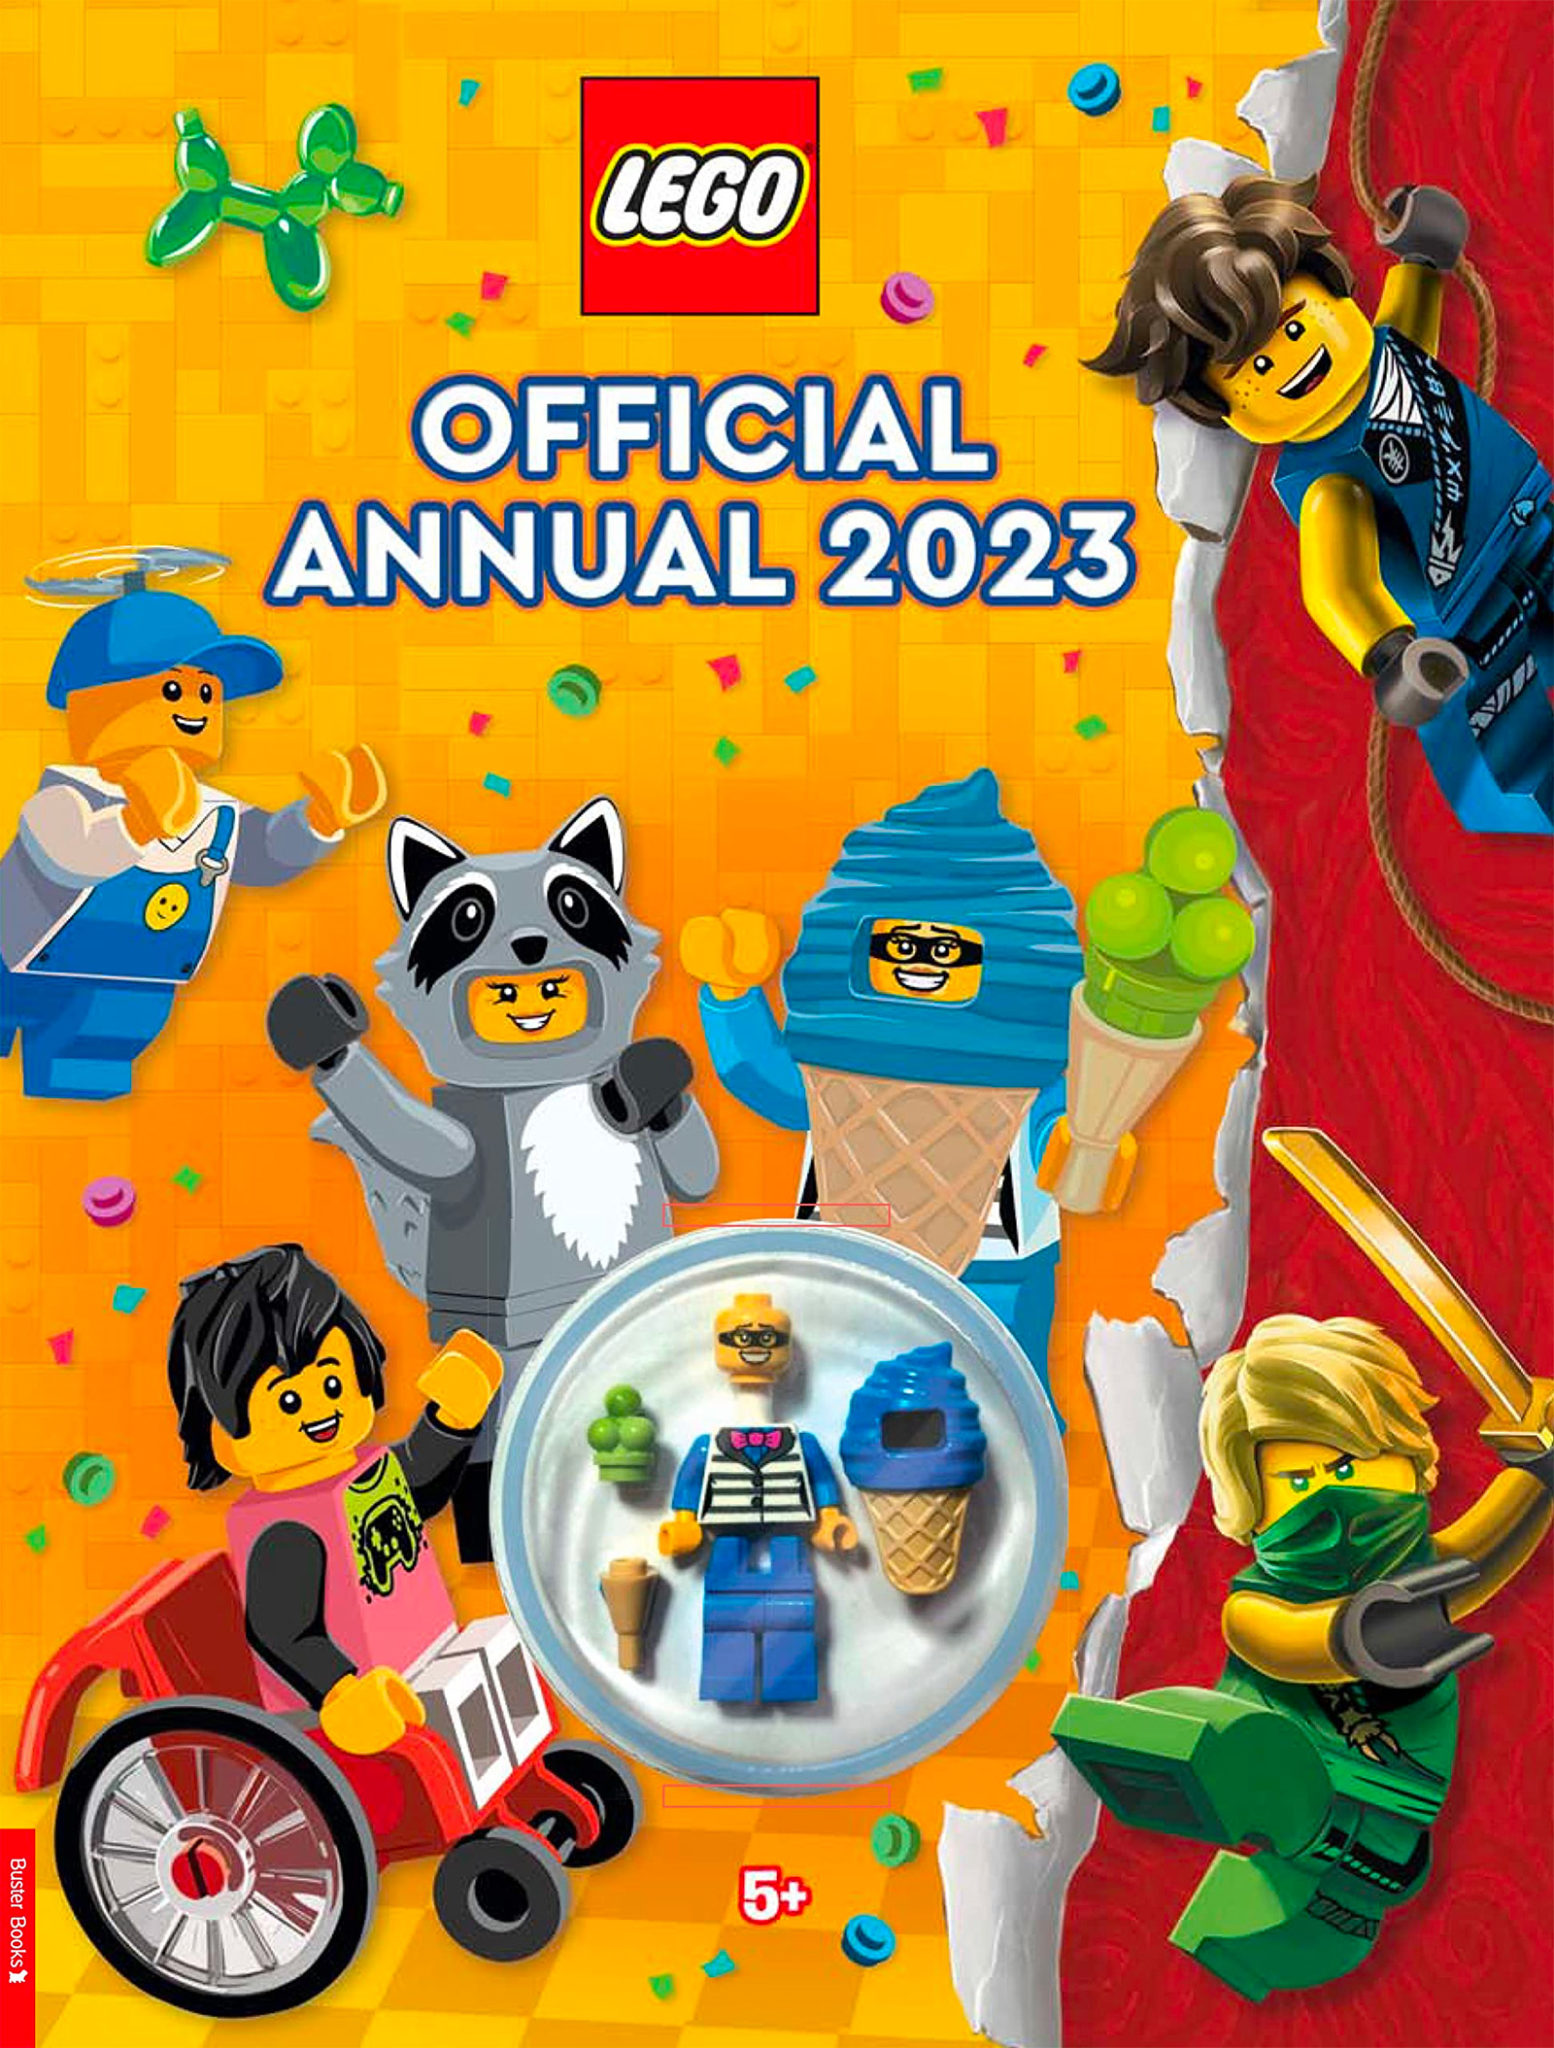 लेगो आधिकारिक वार्षिक 2023: आपके संग्रह के लिए पोशाक में एक और चरित्र